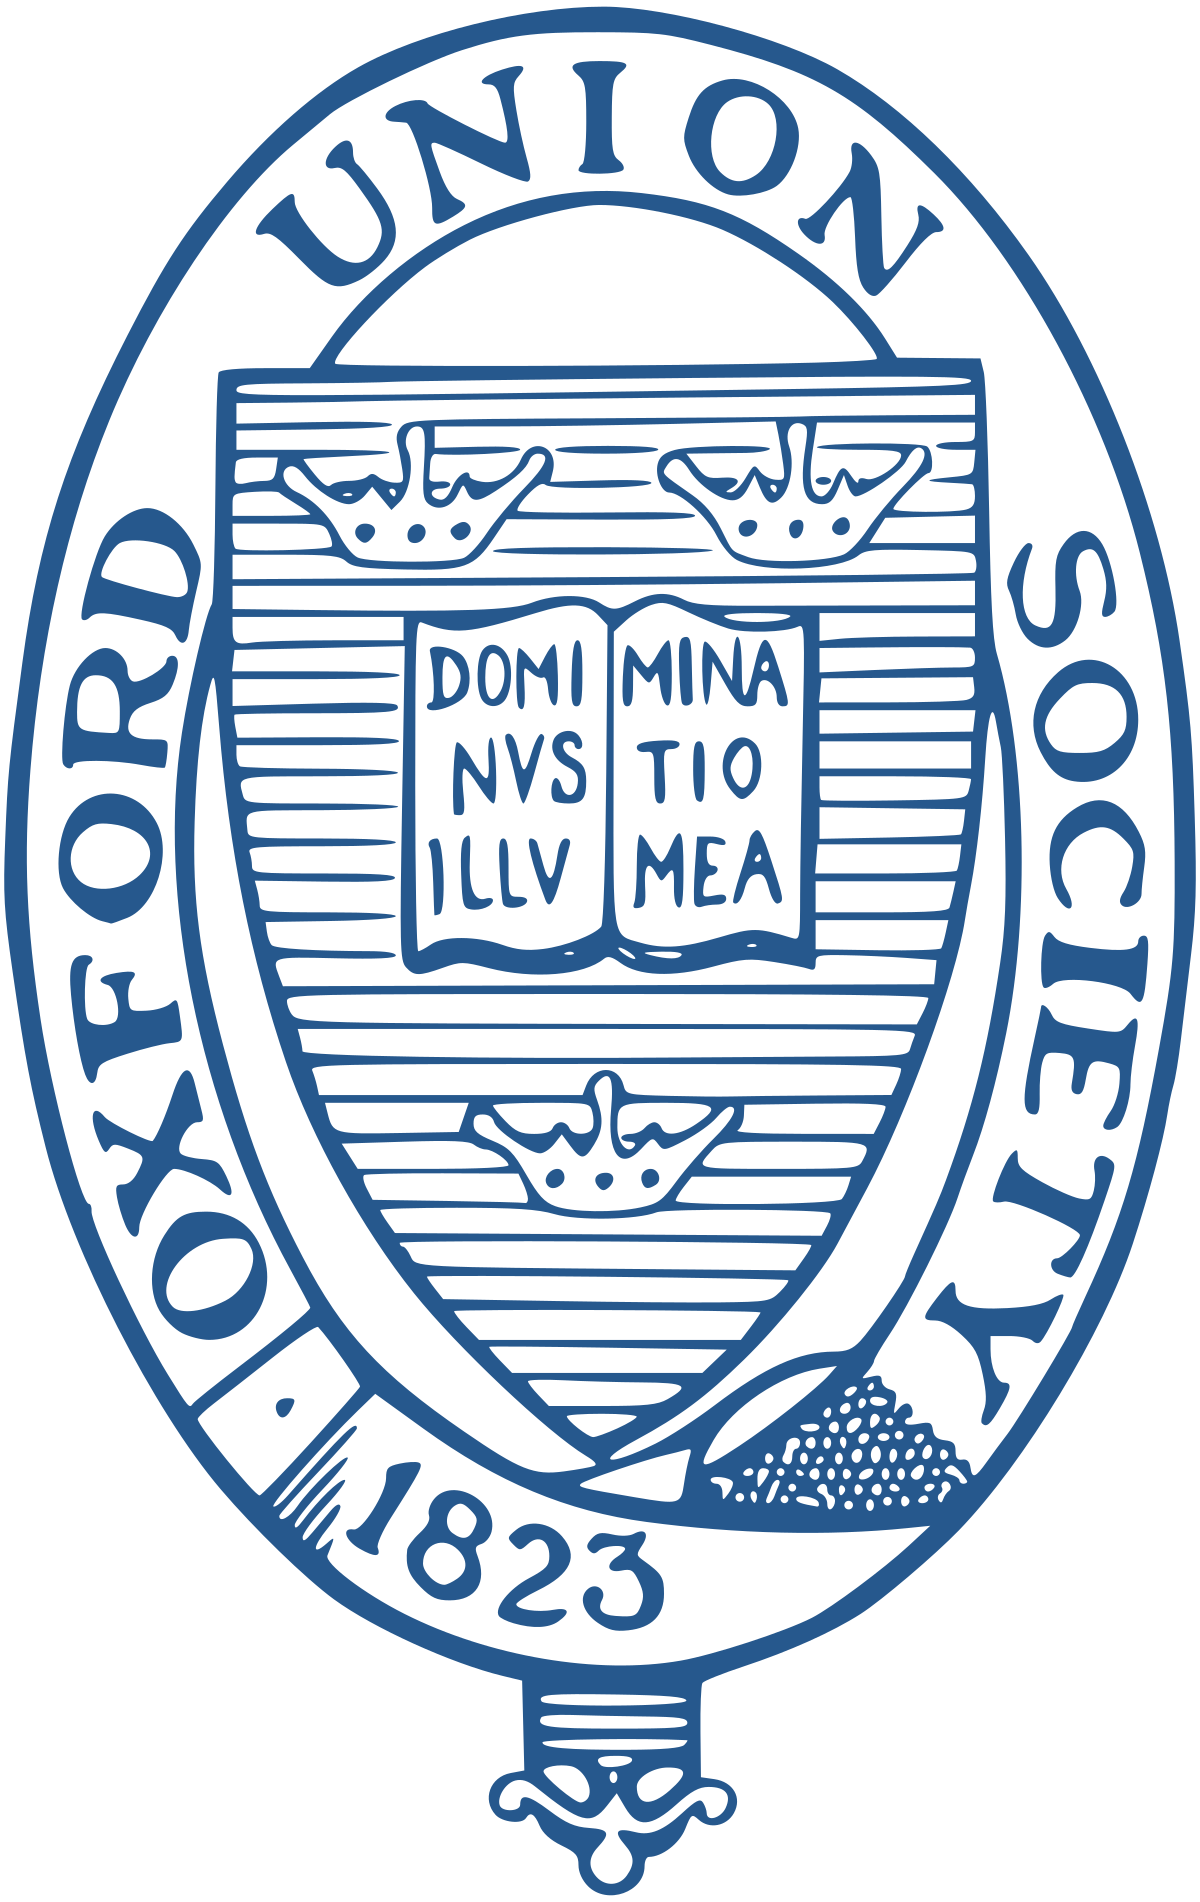 Oxford Union Wikipedia